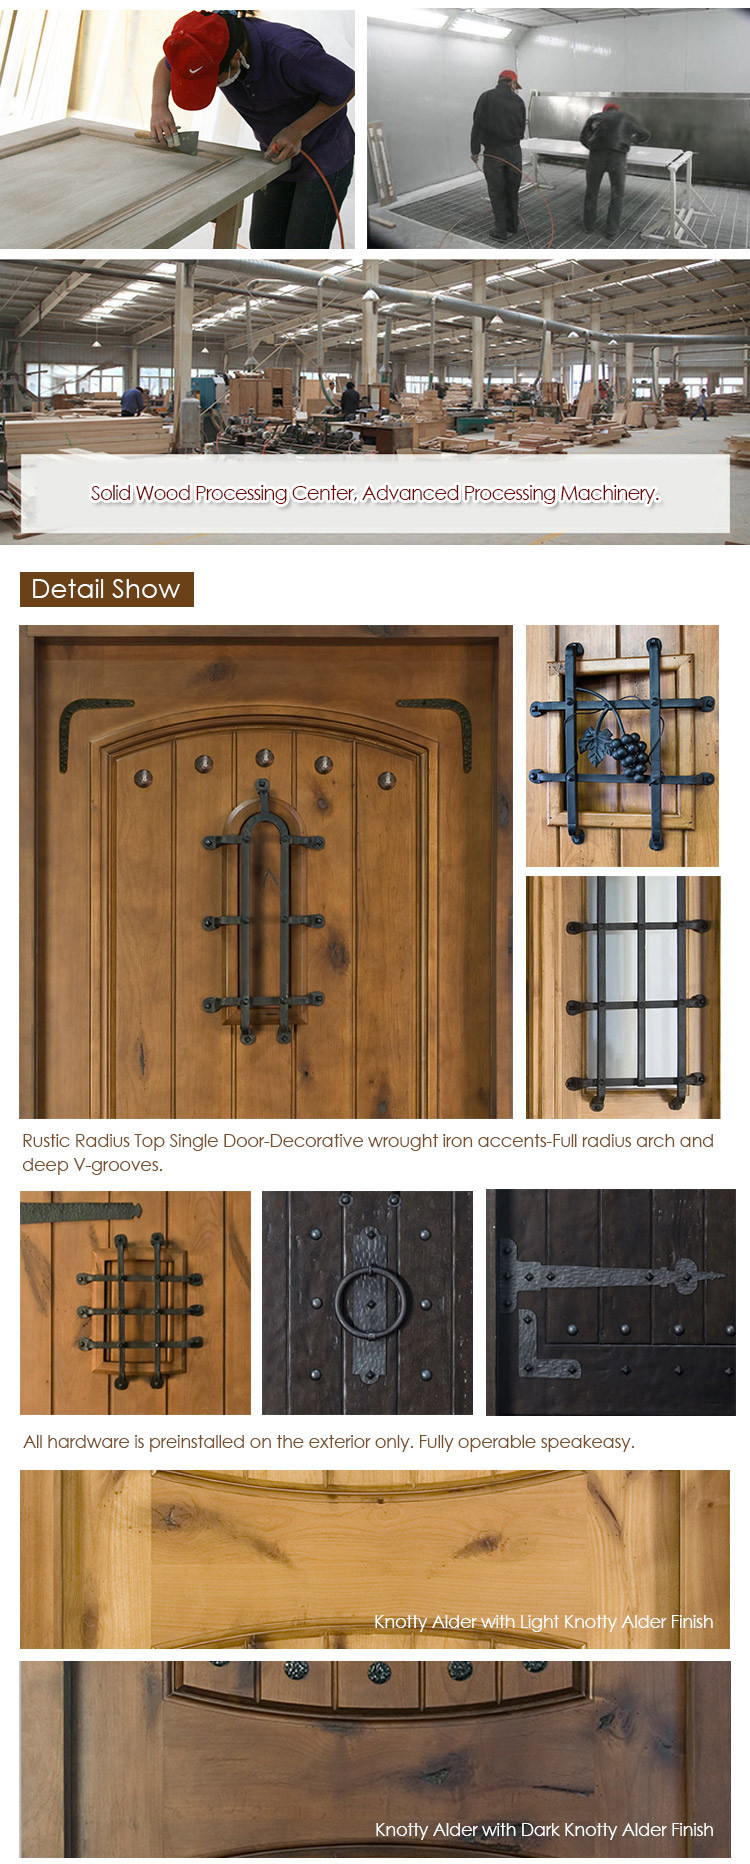 Rustic Series Knotty Alder Exterior Wood Doors Solid Wood Front Door for House